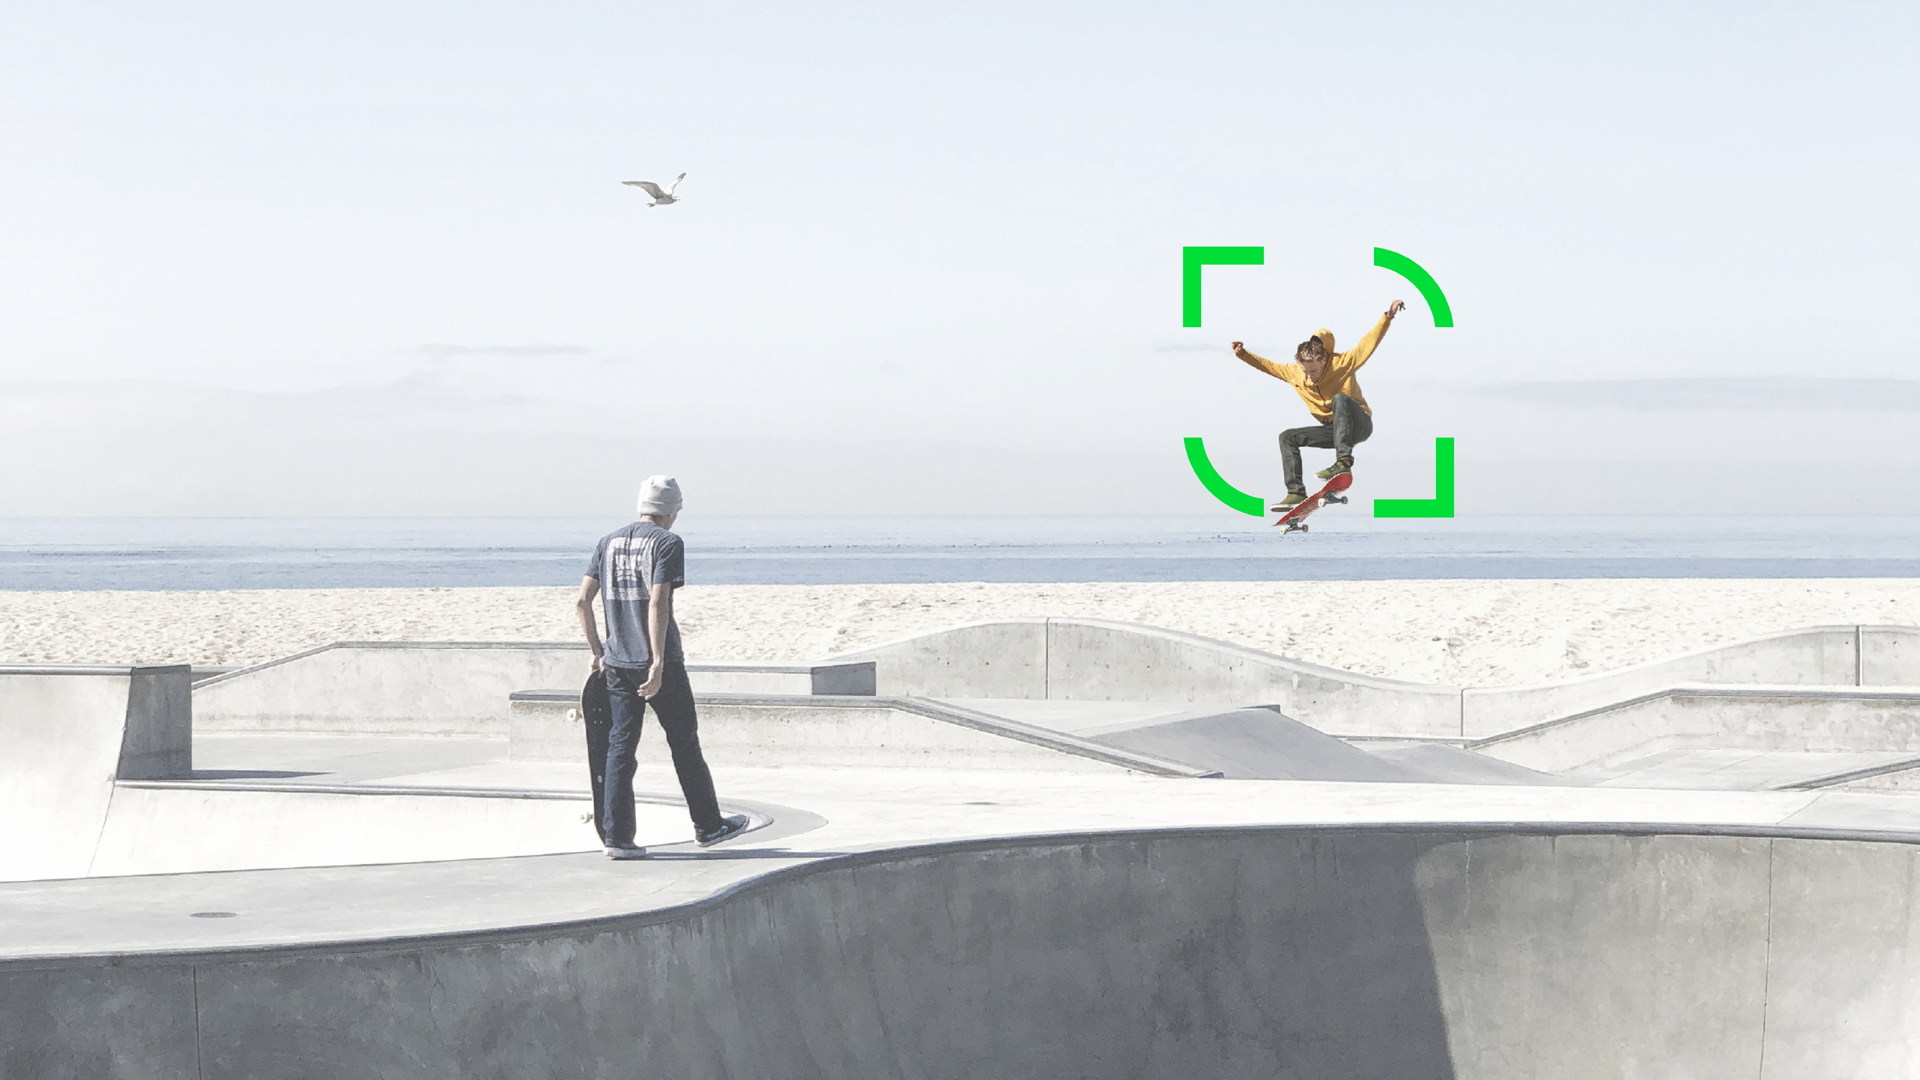 Zwei Skater in einem Skatepark aus Beton, einer springt, der andere hält sein Board. Im Hintergrund sind das Meer und eine Möwe zu sehen.